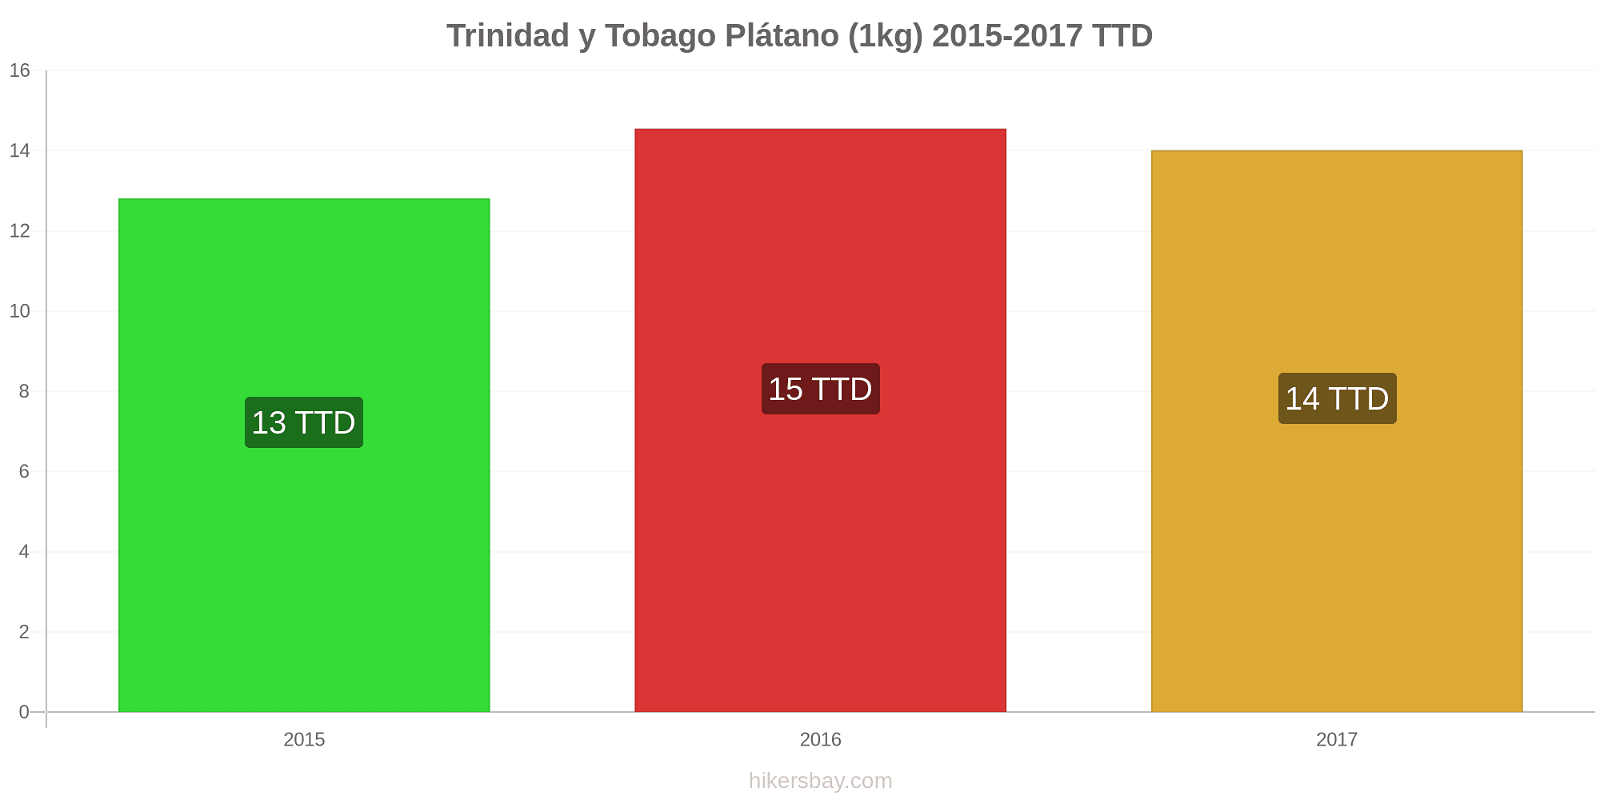 Trinidad y Tobago cambios de precios Plátanos (1kg) hikersbay.com